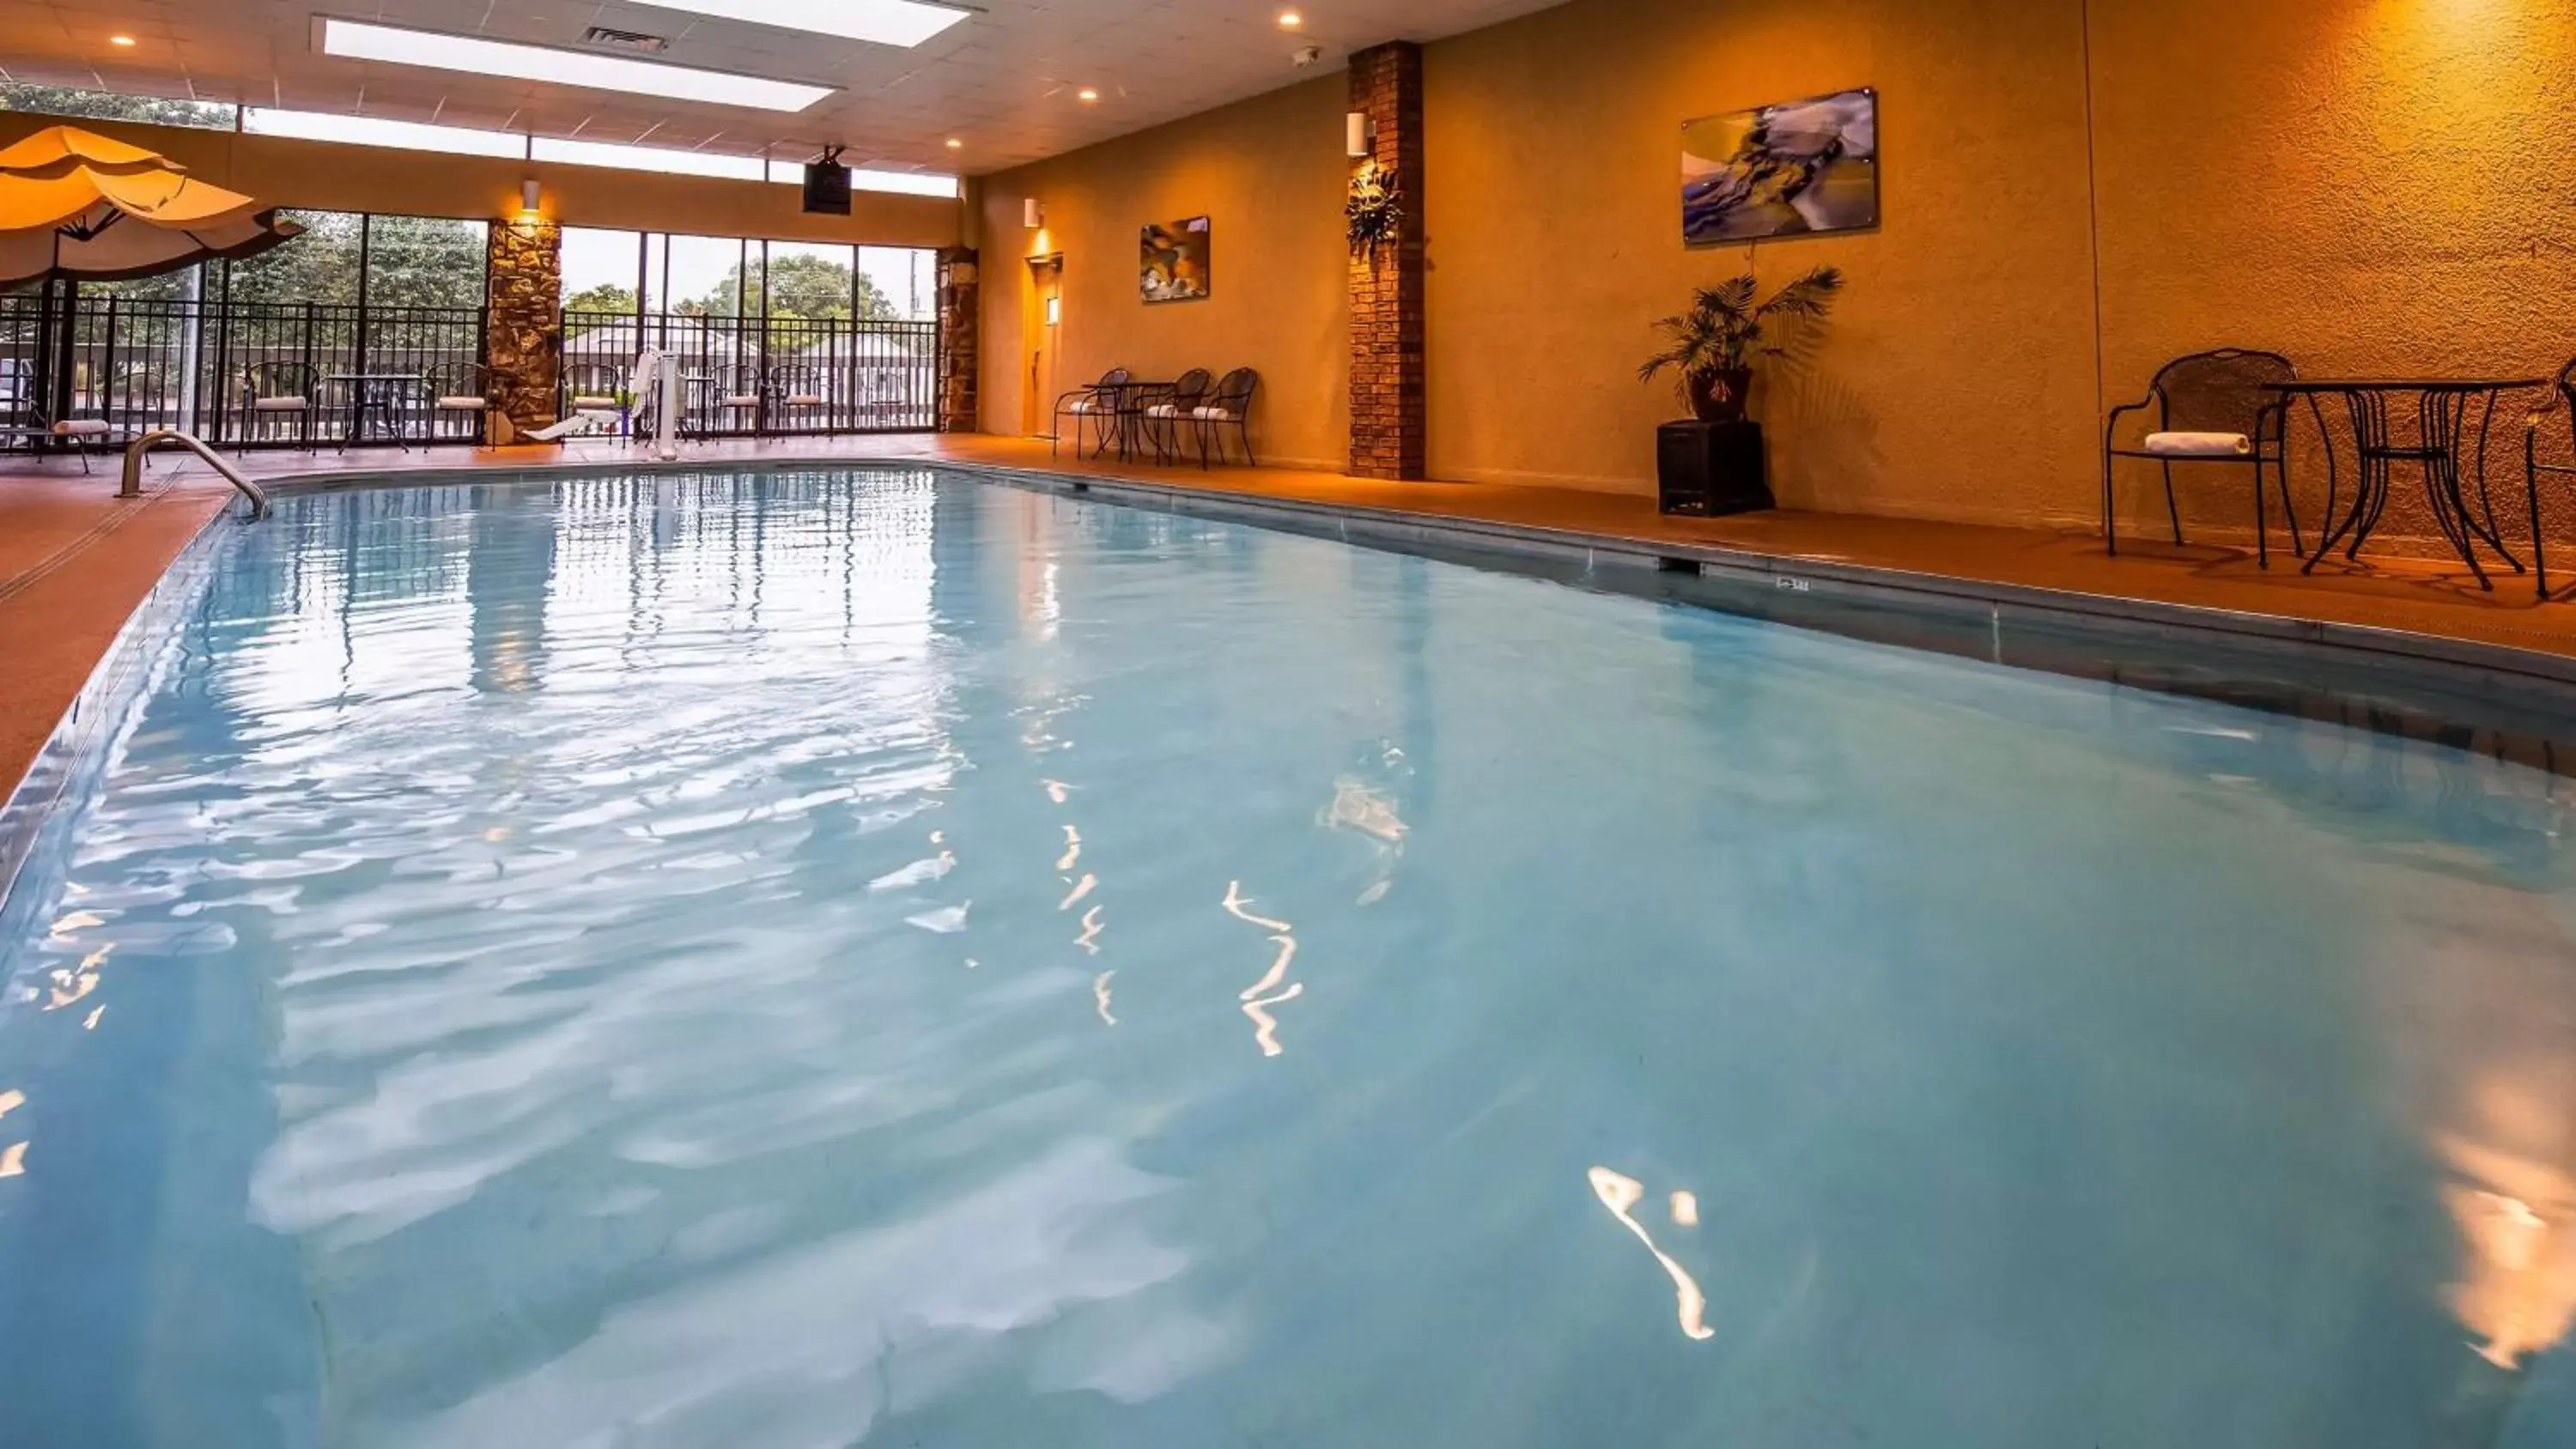 On site, Swimming Pool in Best Western Plus Landing View Inn & Suites